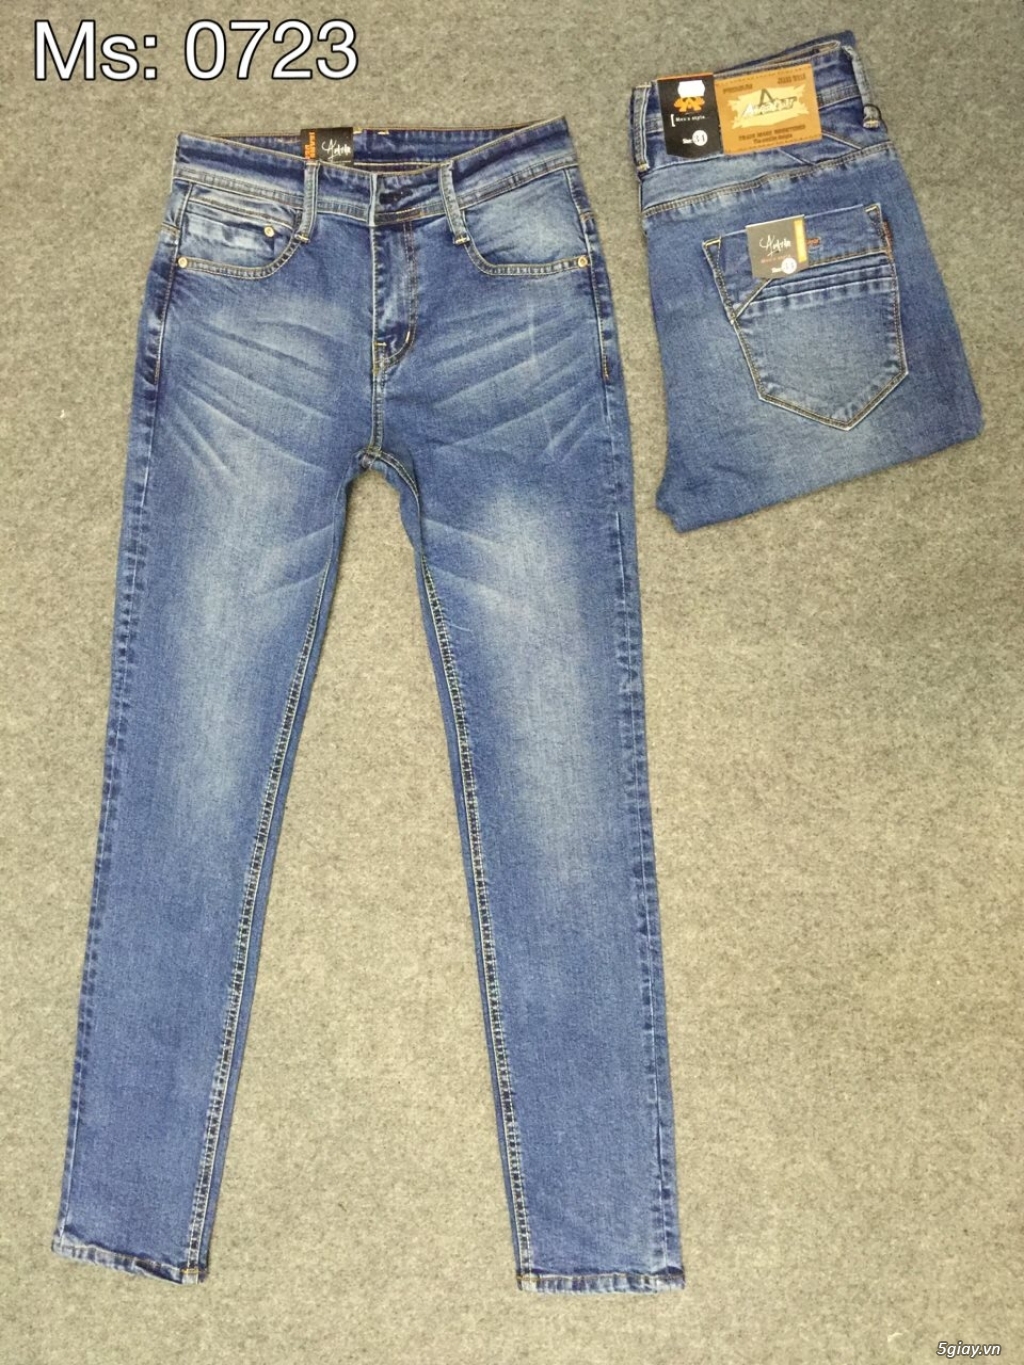 BG STORE - Xưởng Sỉ & Lẻ Quần áo jeans Nam Nữ cao cấp giá rẻ - 6